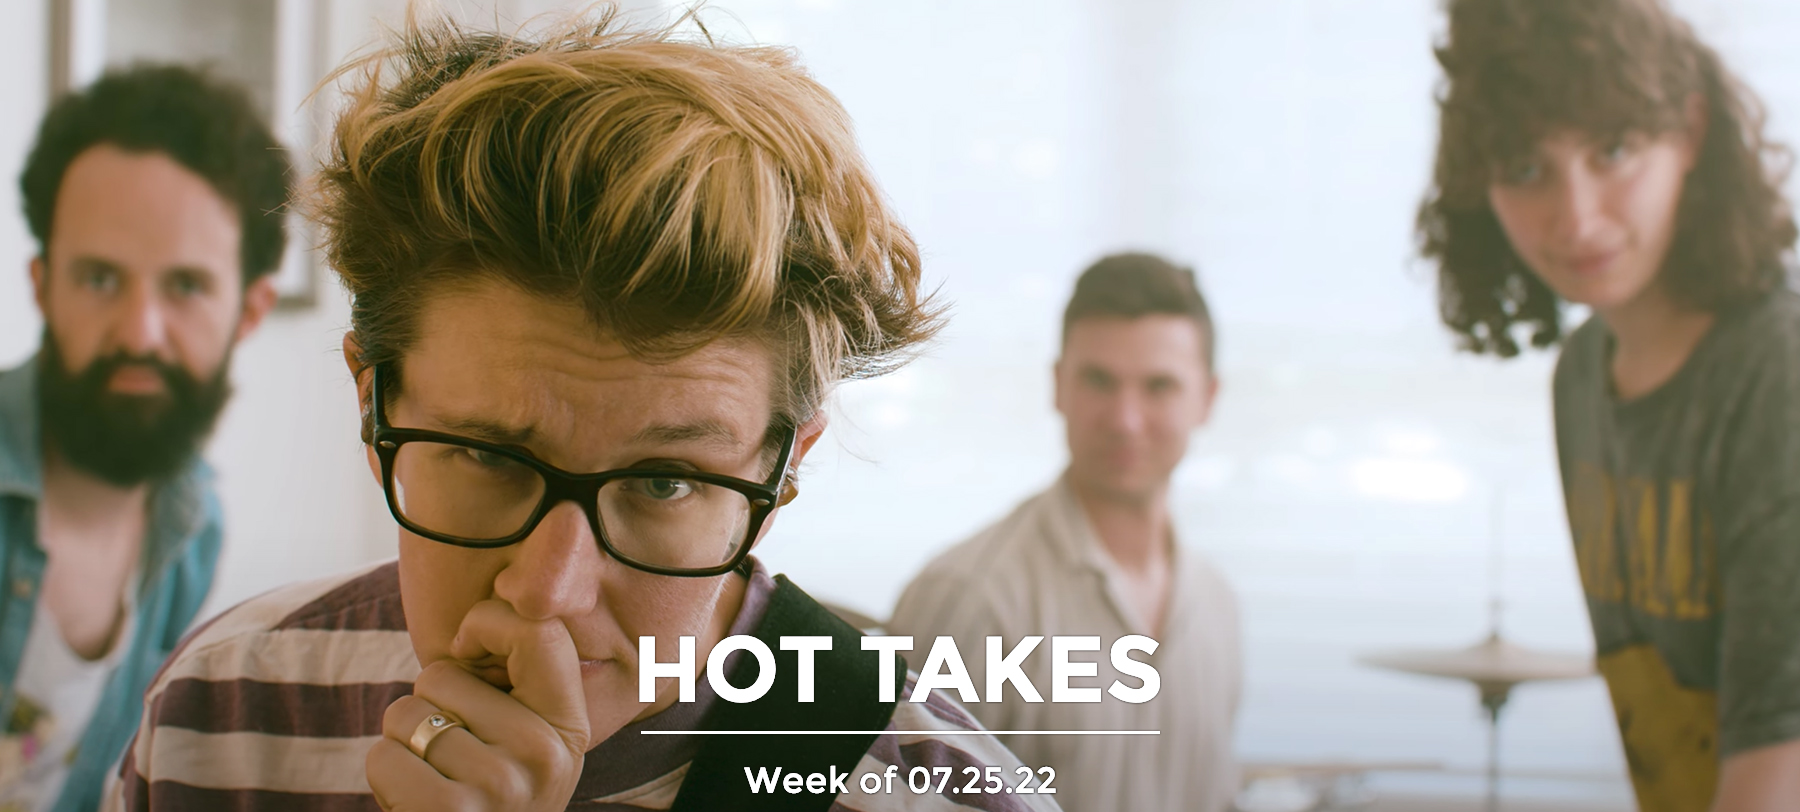 #HotTakes | Week of 07.25.22